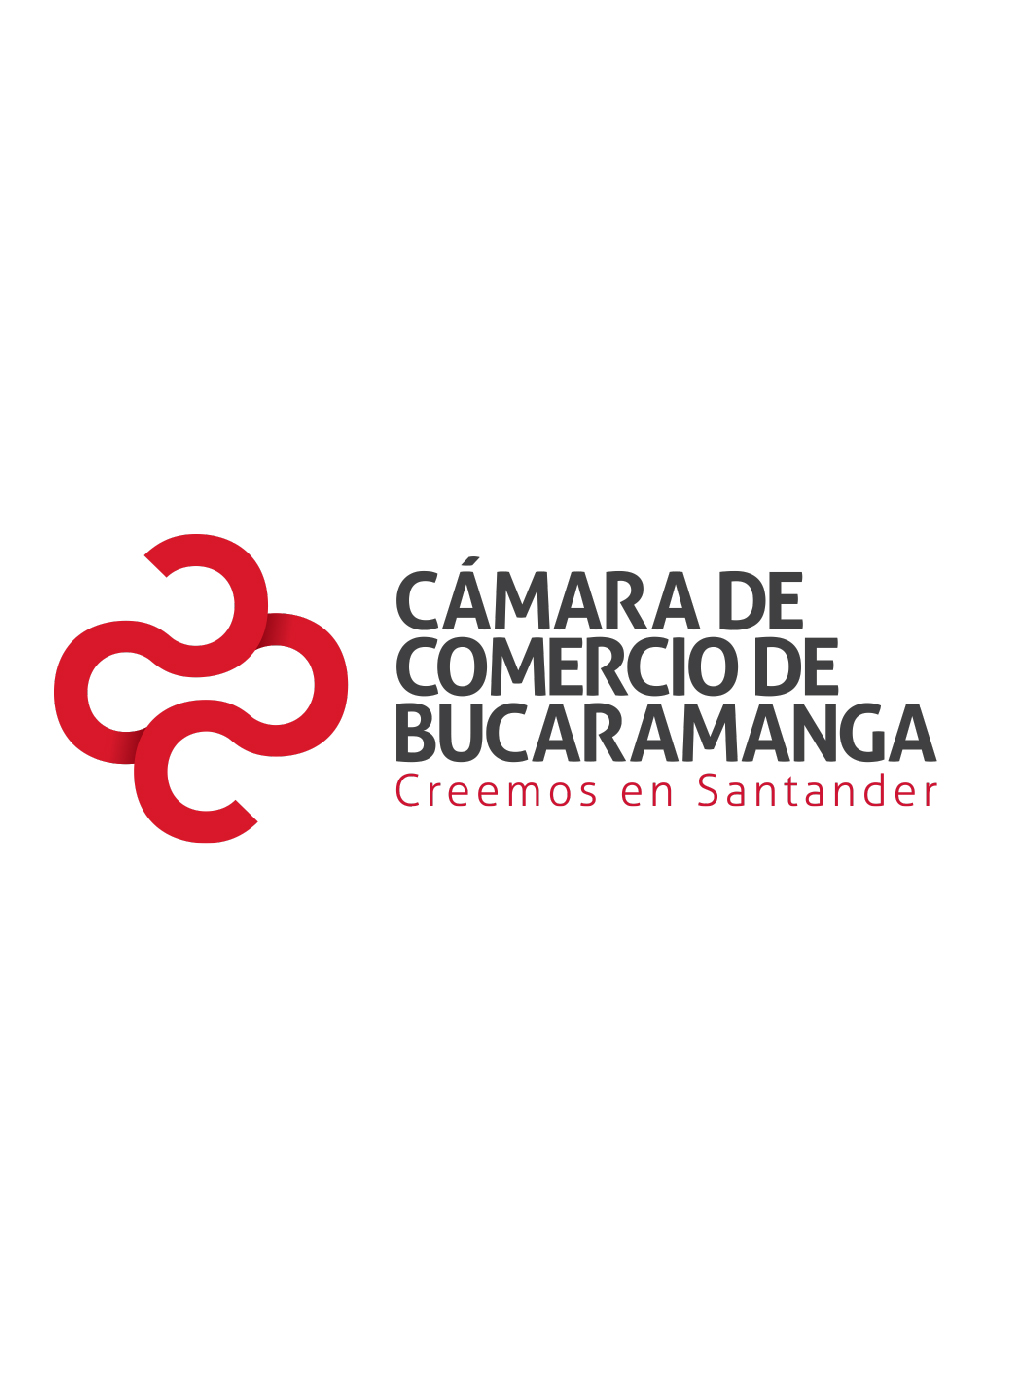 Emprendimiento en provincias de Santander 2017 - enero-agosto